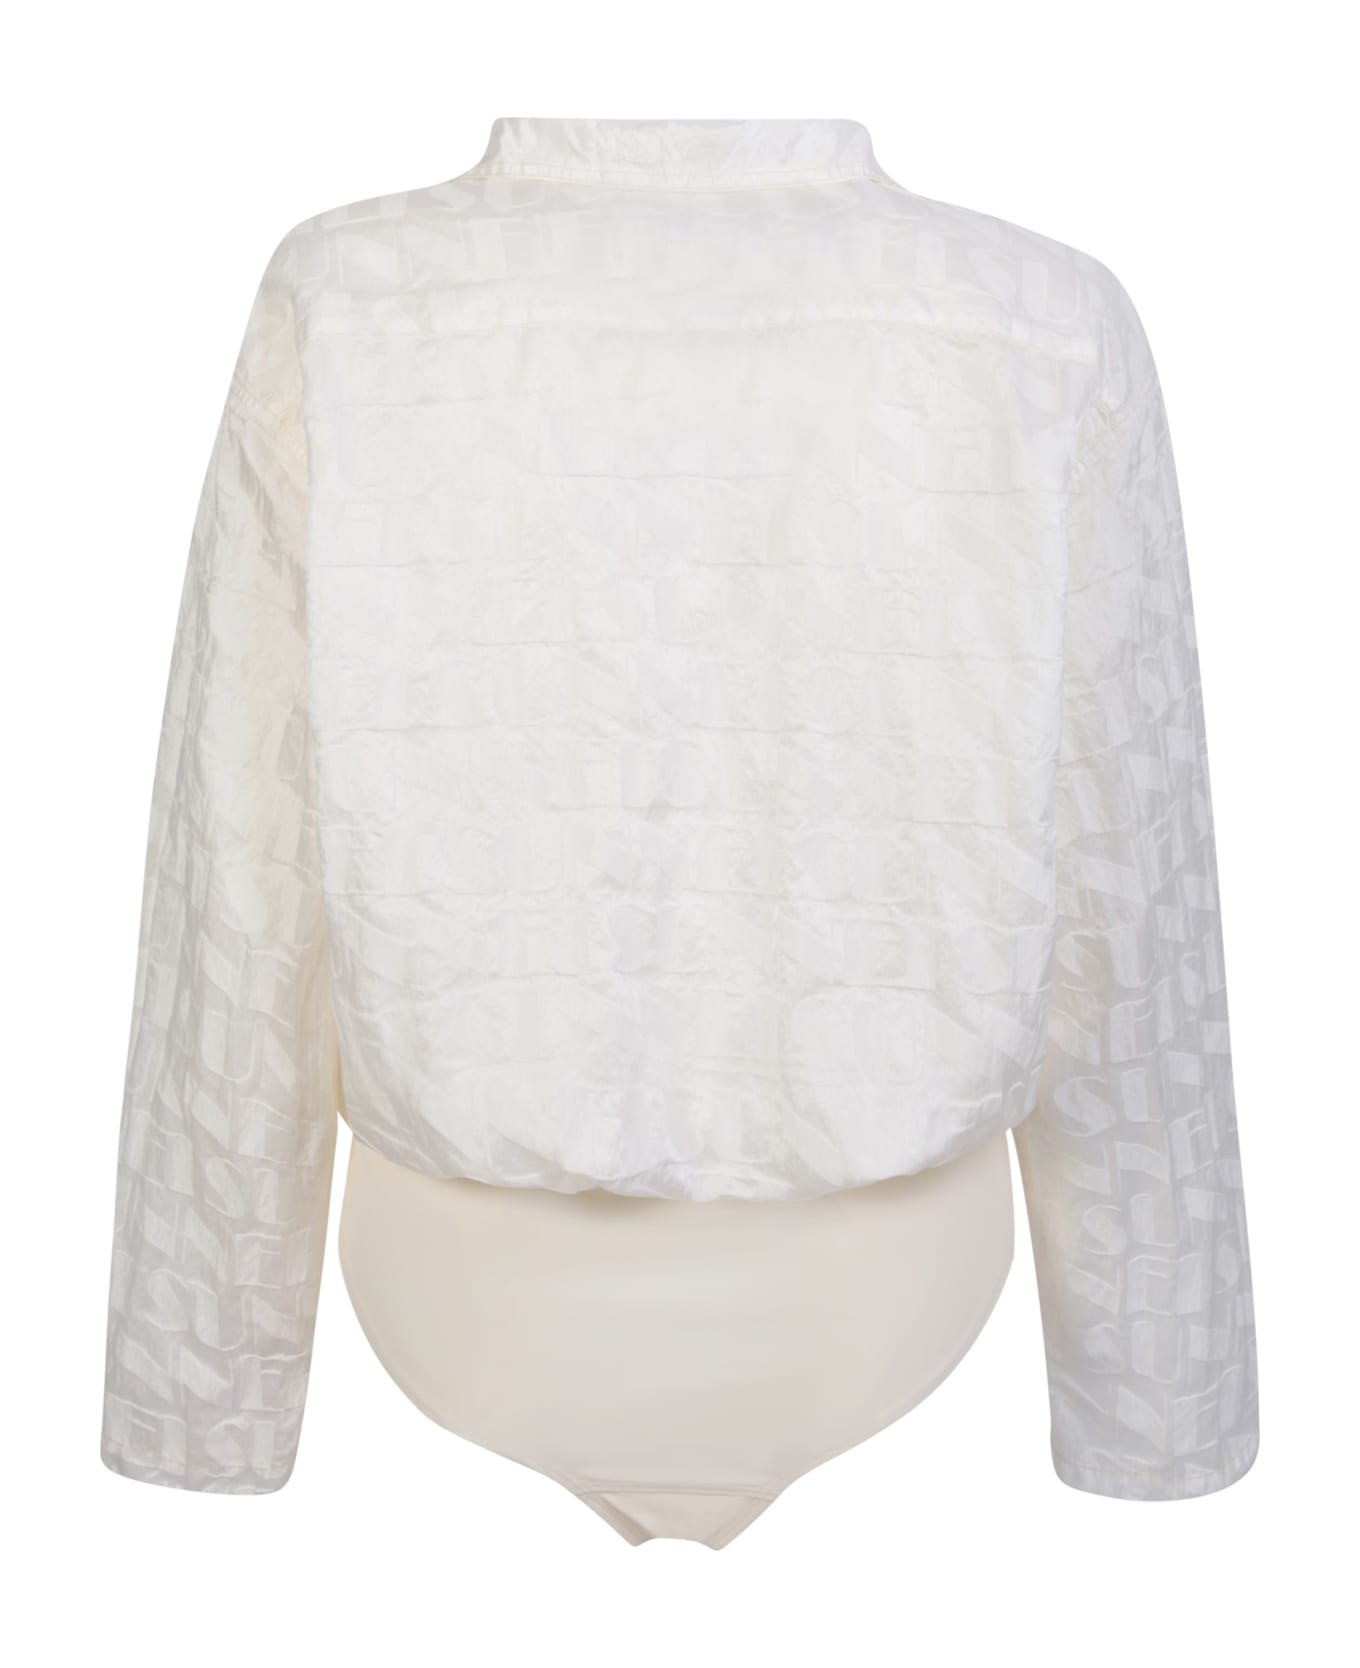 Sunnei Jacquard Shirt Bodysuit In Cream - White